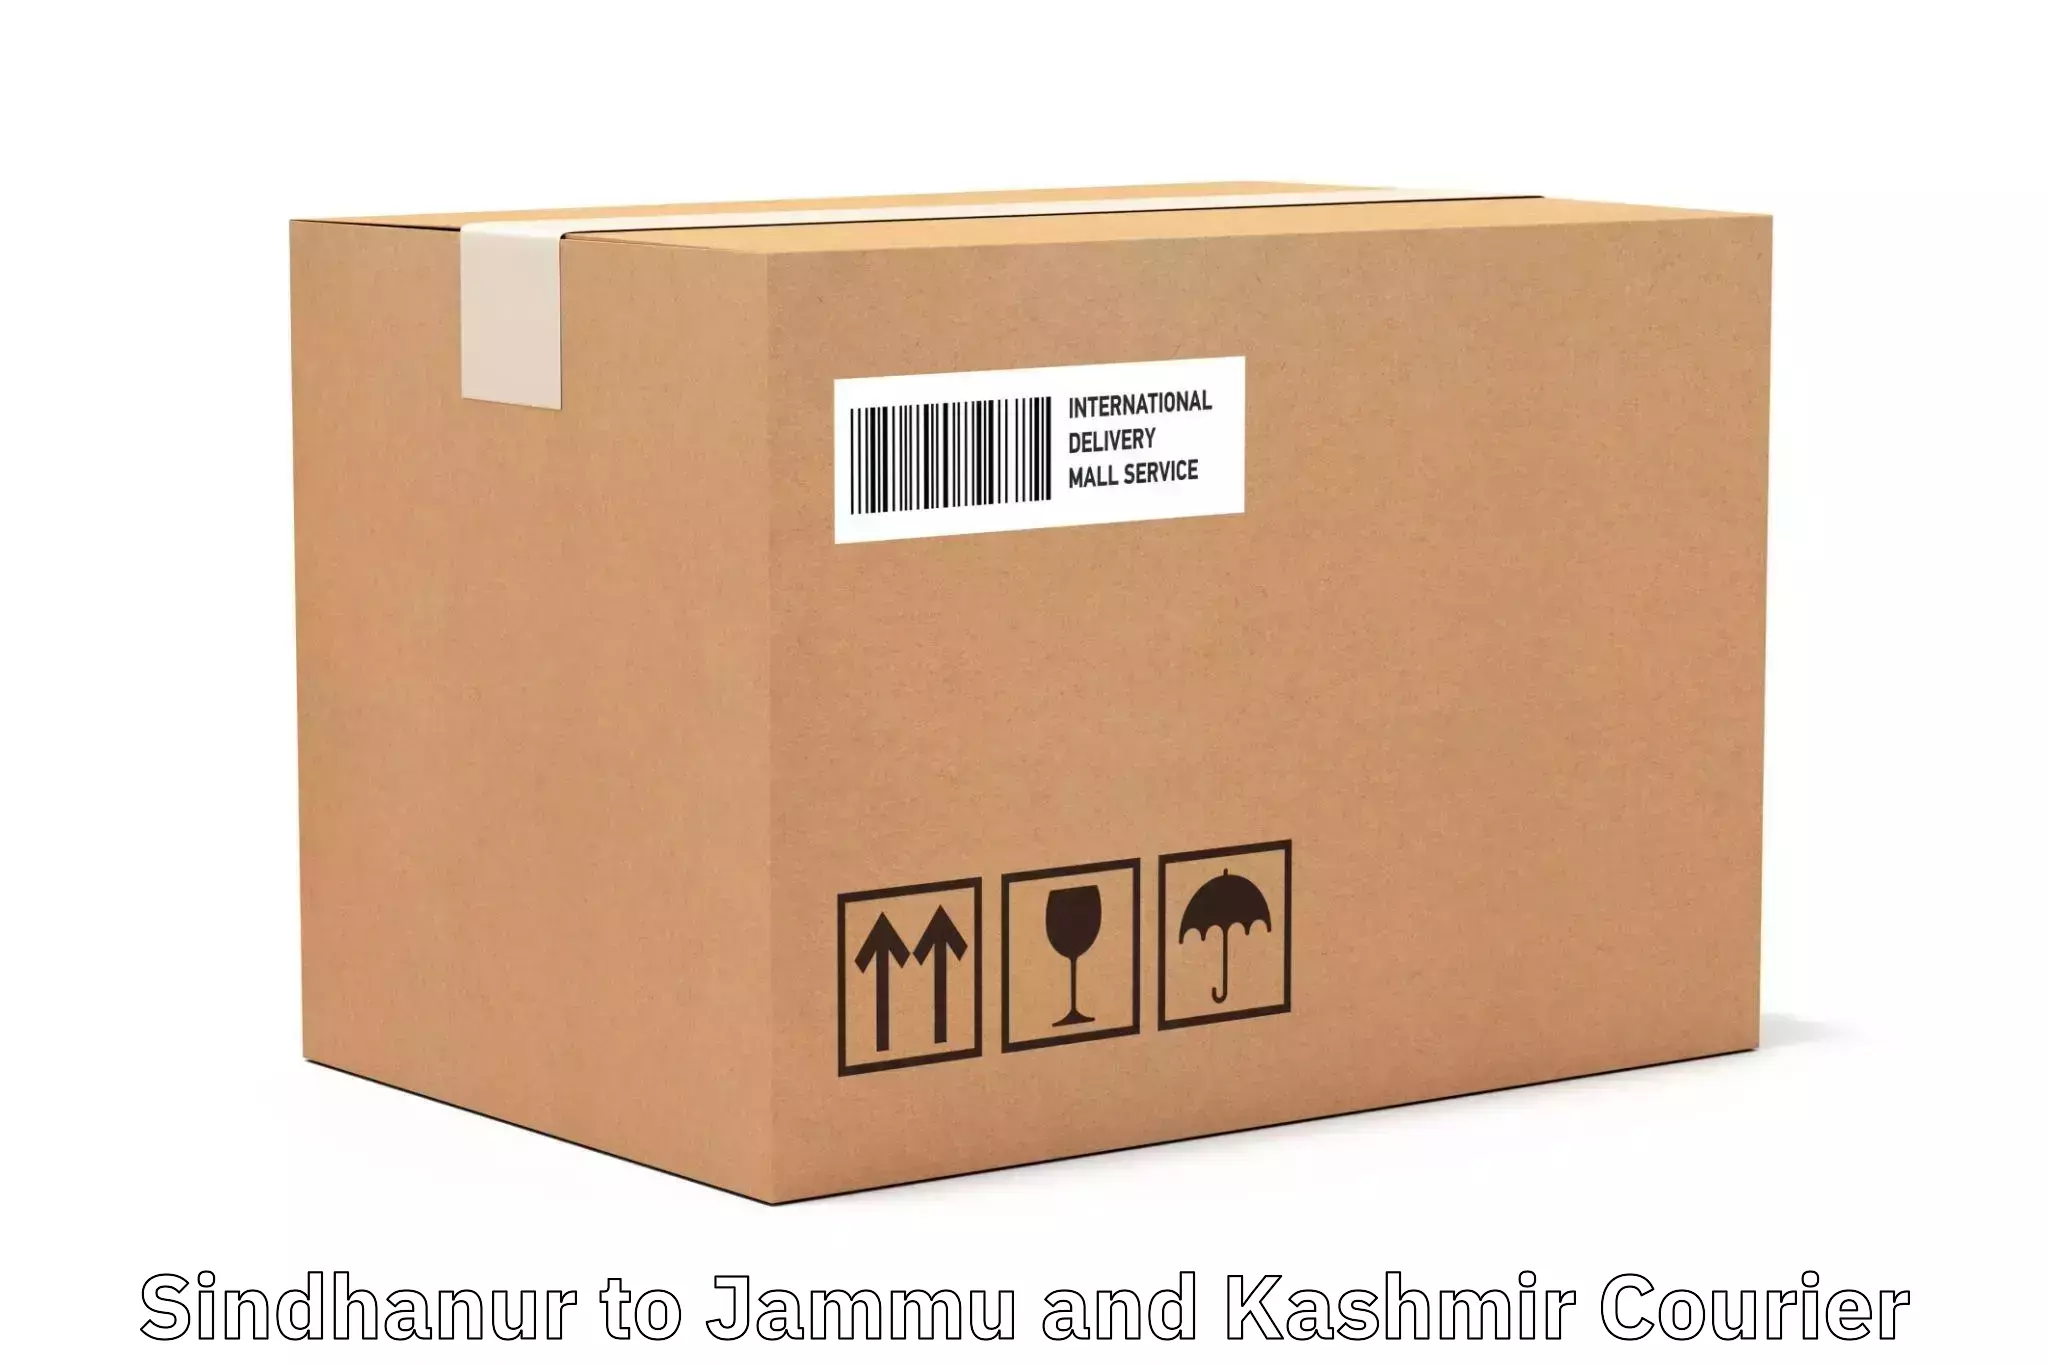 Lightweight parcel options Sindhanur to Kishtwar